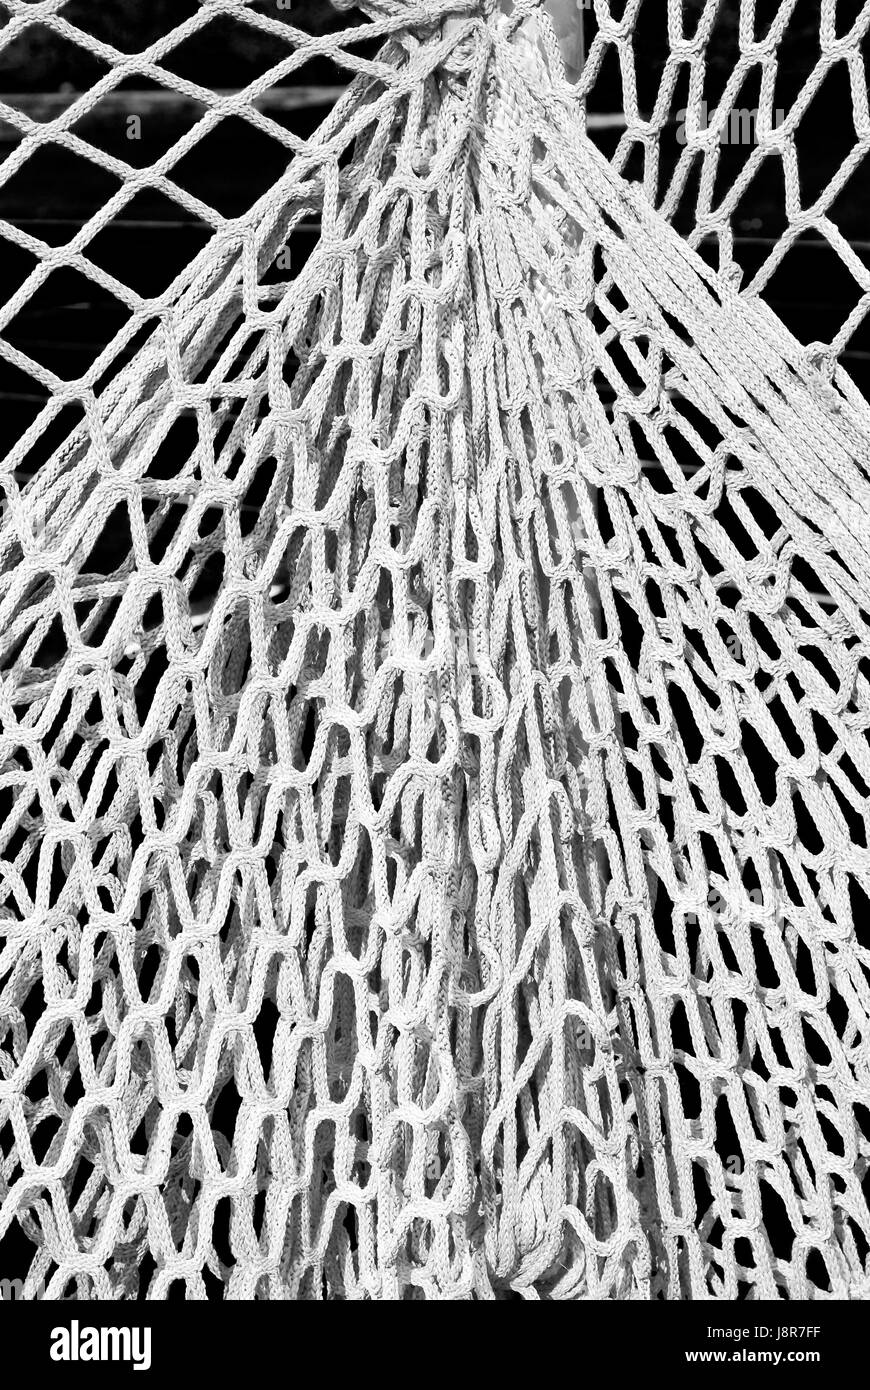 net, decoration, equipment, pattern, netting, rope, fishing net